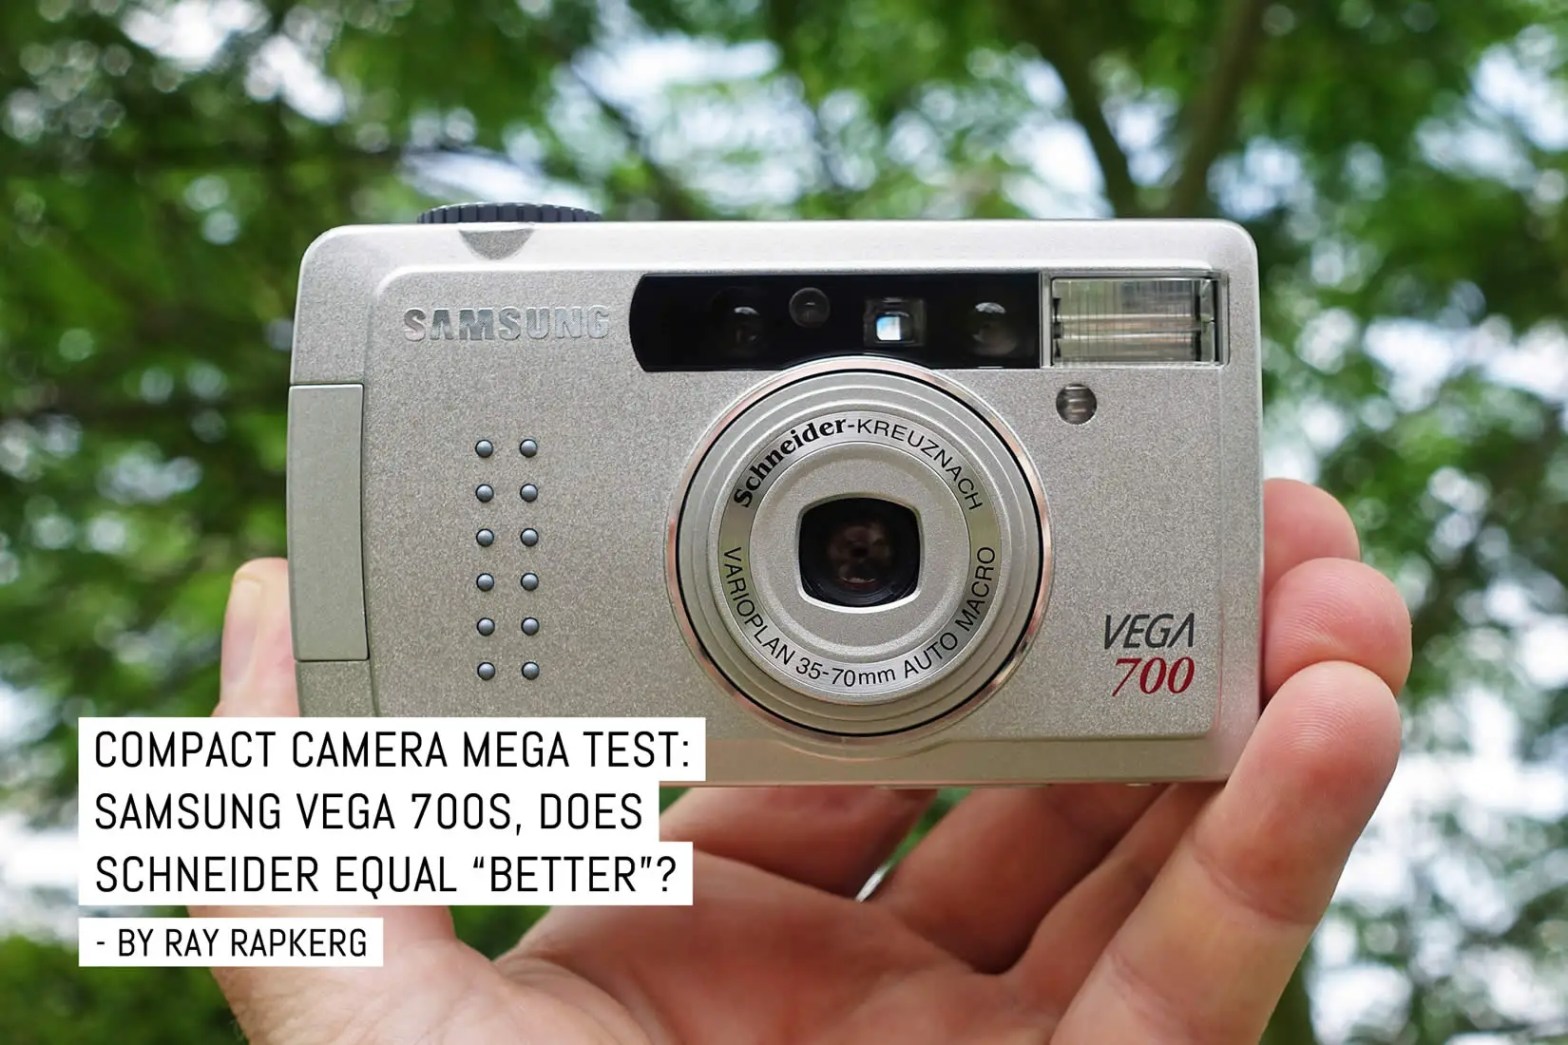 Compact camera mega test: Samsung Vega 700, does Schneider-Kreuznach equal “better”?